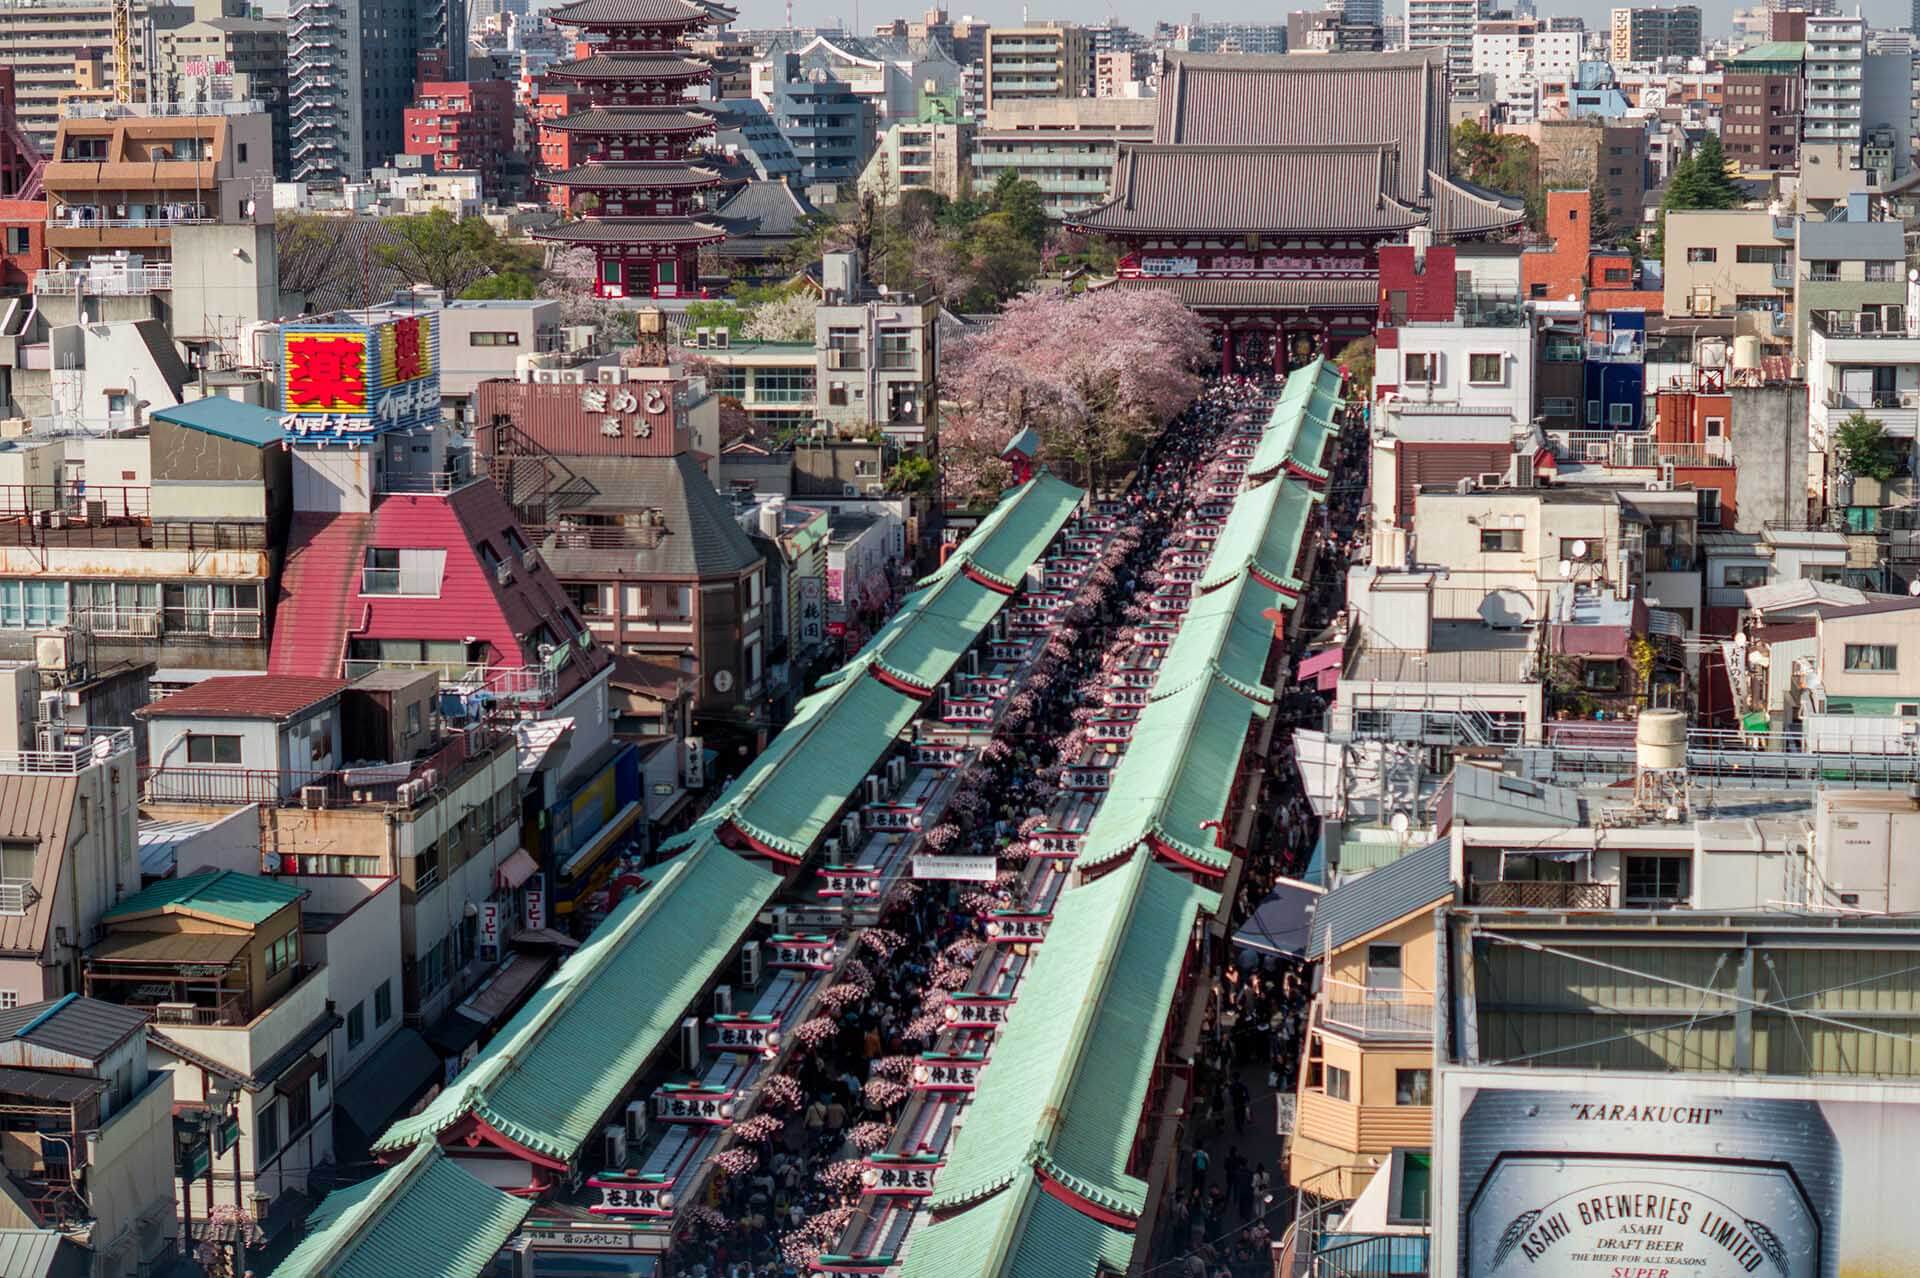 ทิวทัศน์ของวัดเซนโซจิที่ประเทศญี่ปุ่น ซึ่งตัวอาคารมีทั้งความทันสมัยและกลิ่นอายของความดั้งเดิมในเวลาเดียวกัน